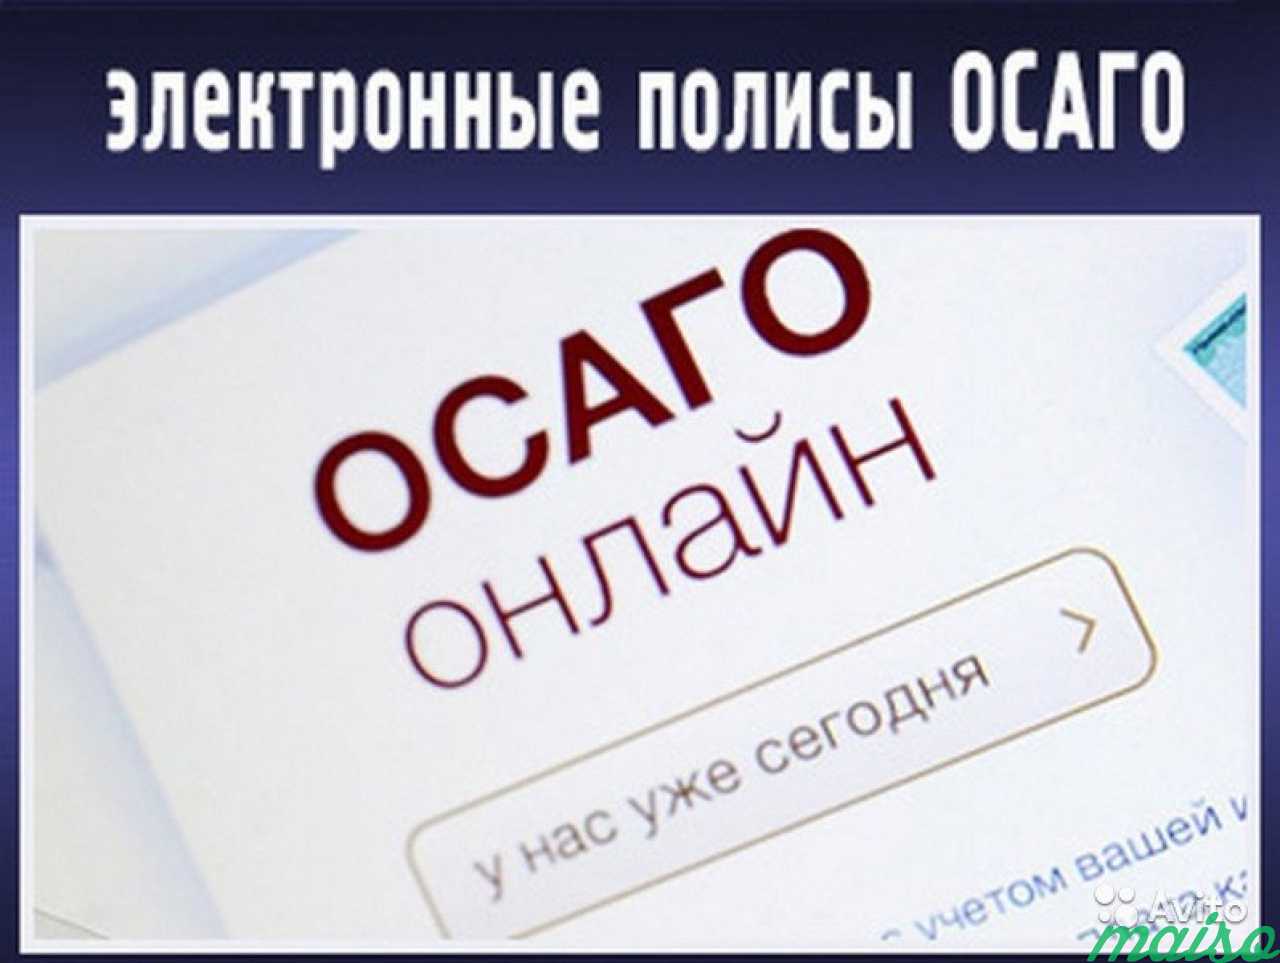 Осаго Онлайн Москва